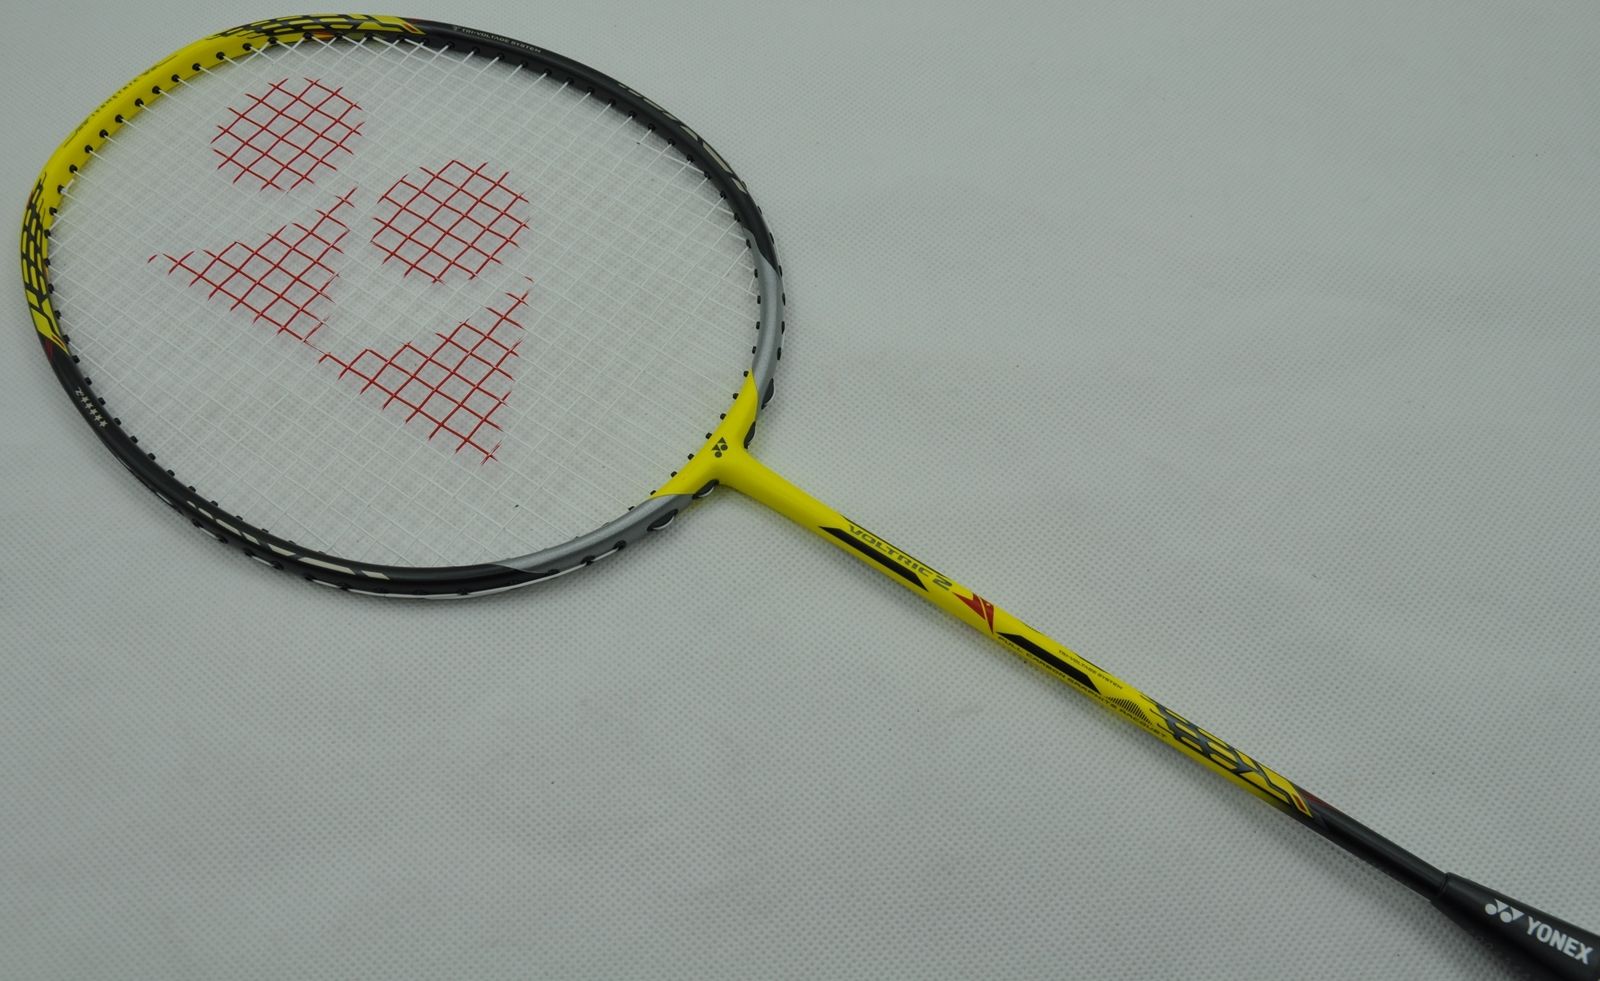 Yonex Voltric Z Force 2 Badminton Racket | Sporty Review